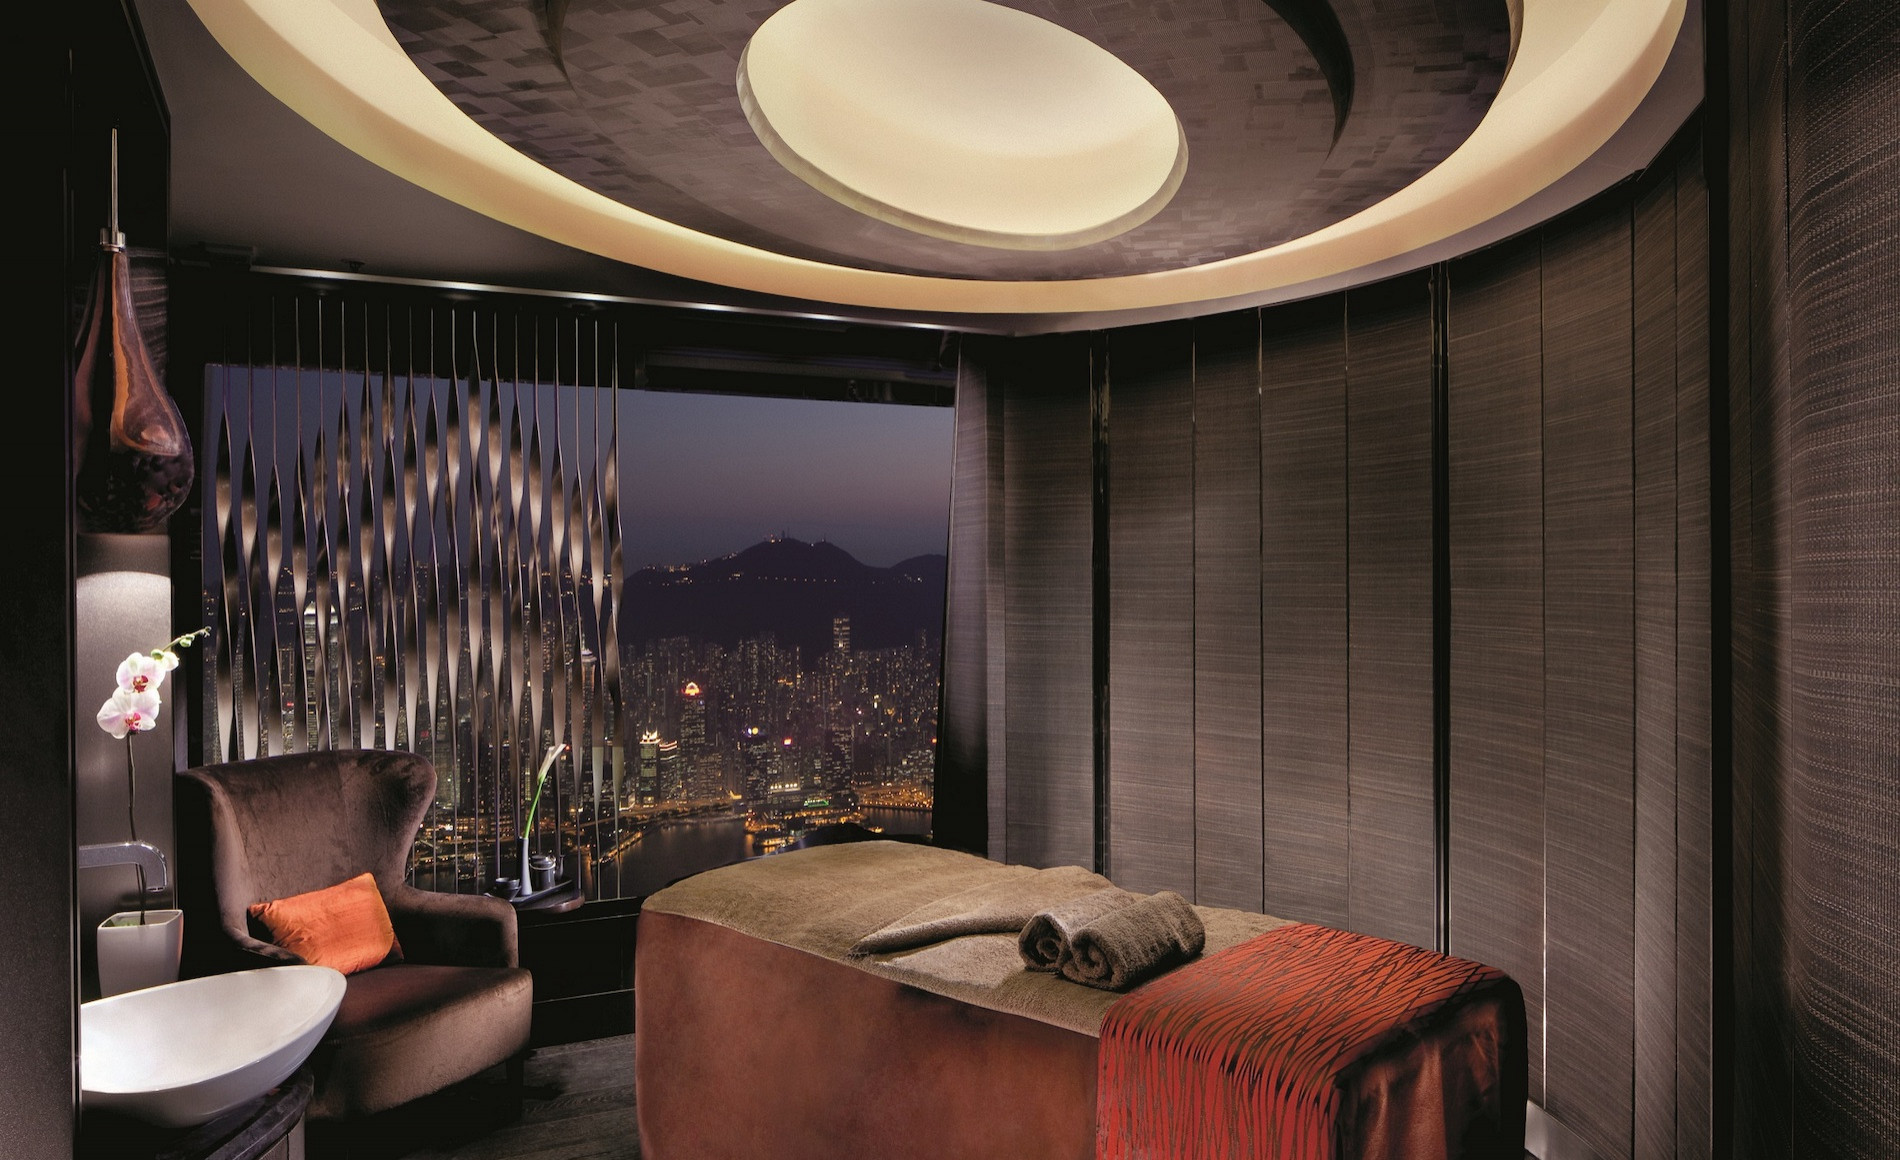 The Ritz-Carlton, Hong Kong